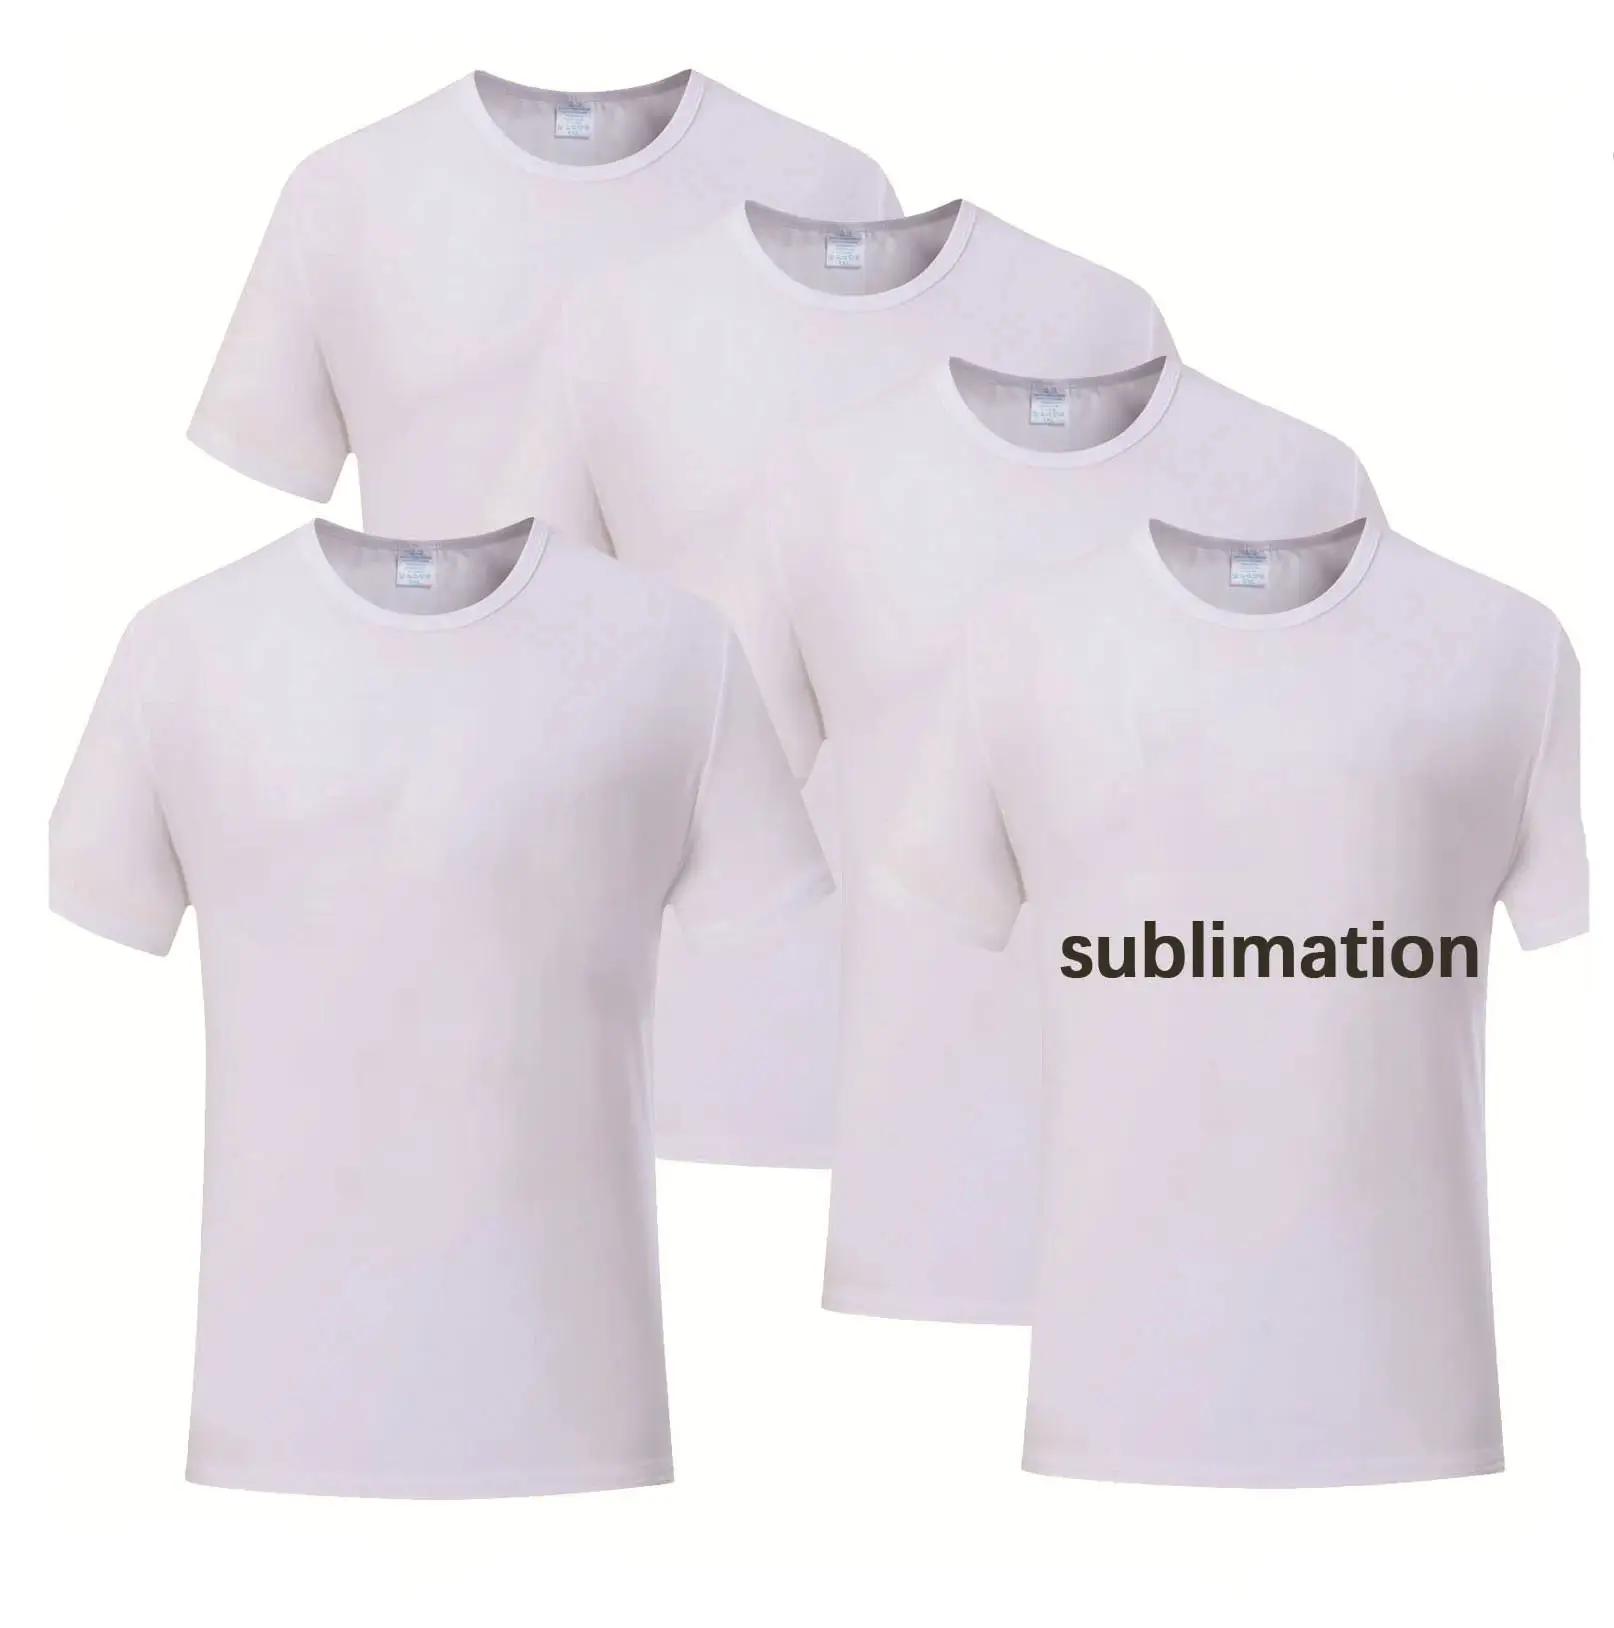 Camisetas blancas lisas de 100% poliéster personalizadas de alta calidad, camisetas de sublimación impresas en blanco de cuello redondo unisex de gran tamaño para transferencia